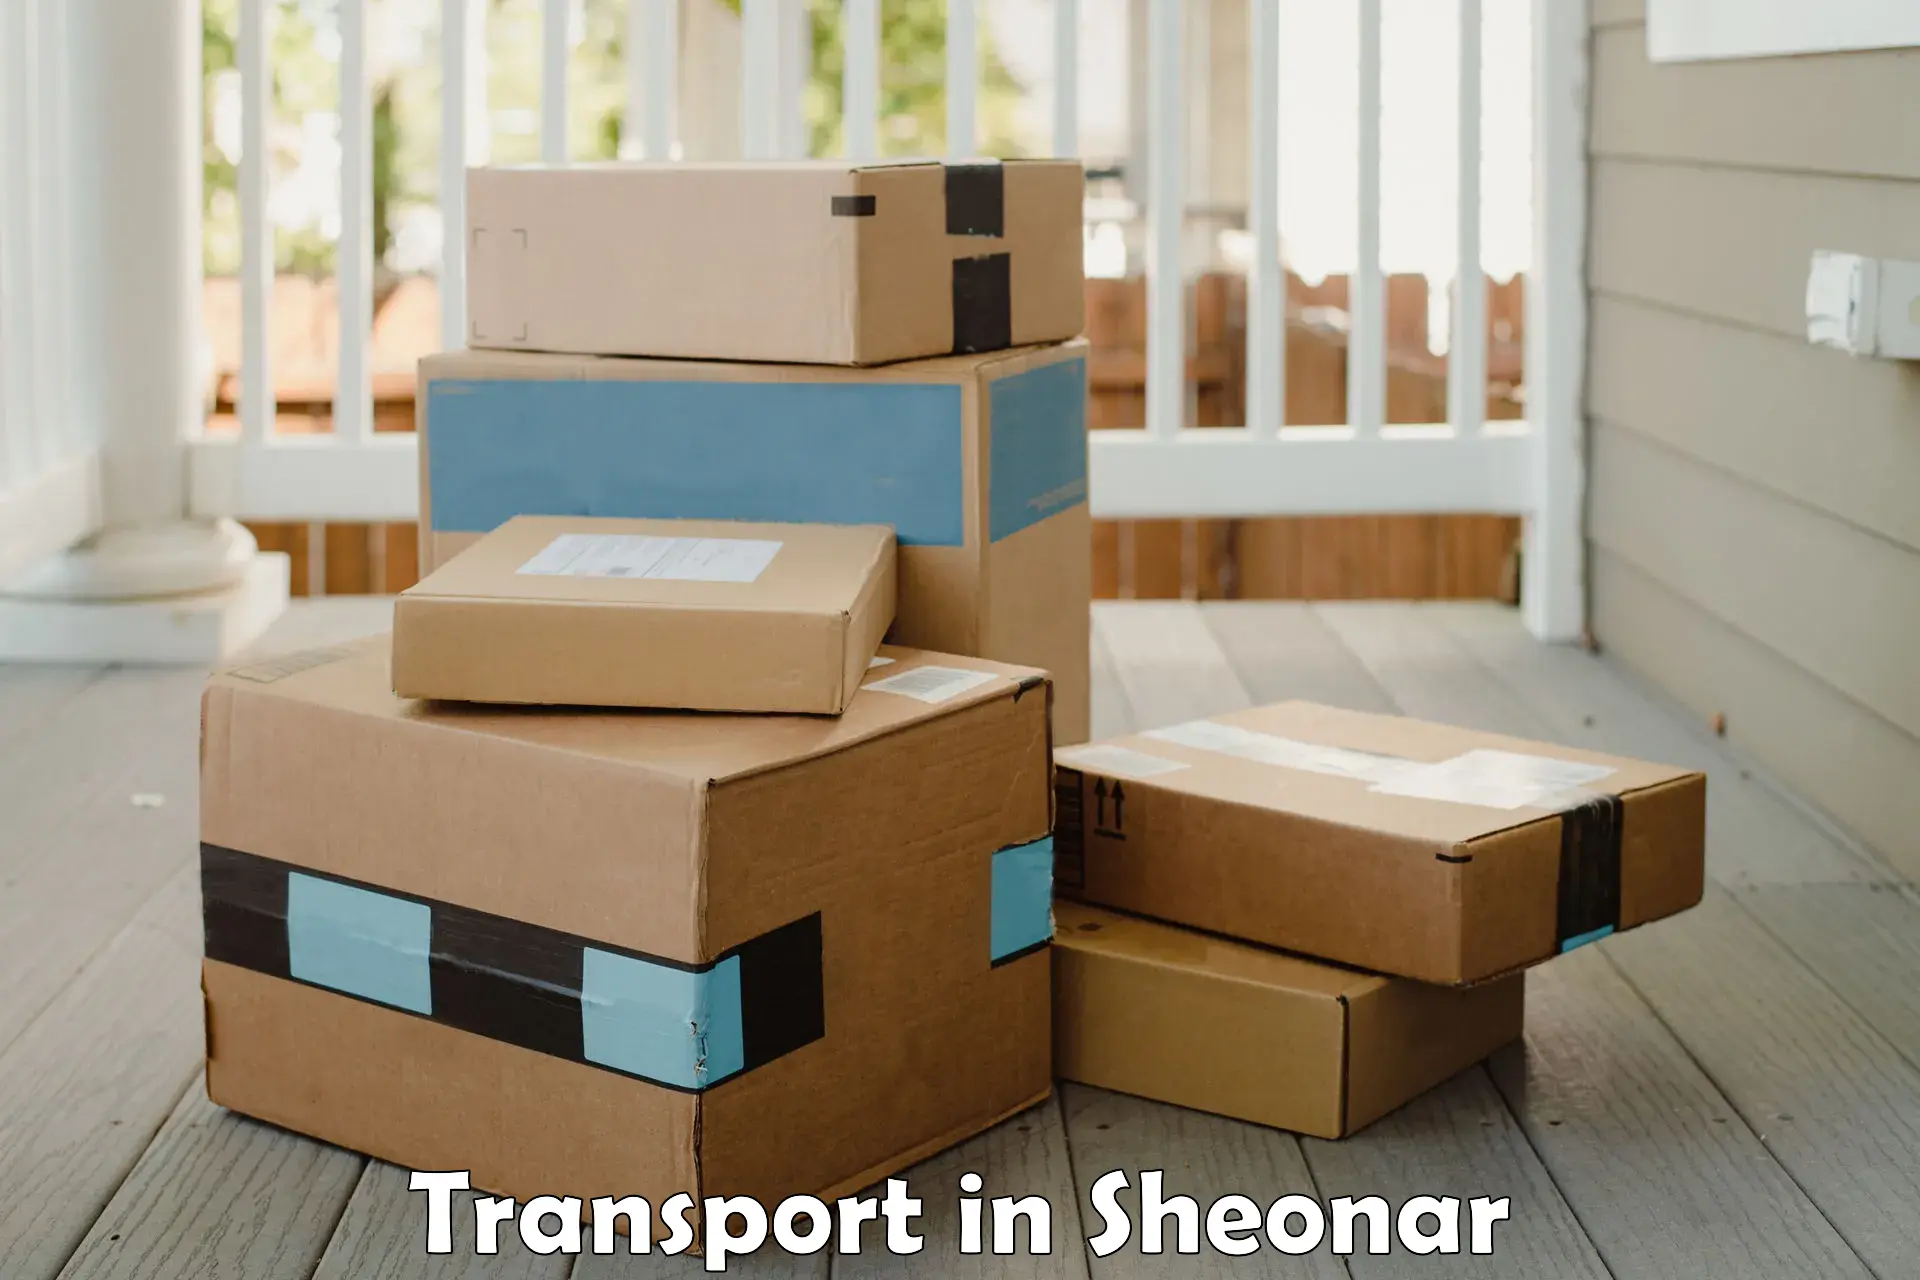 Transport in sharing in Sheonar